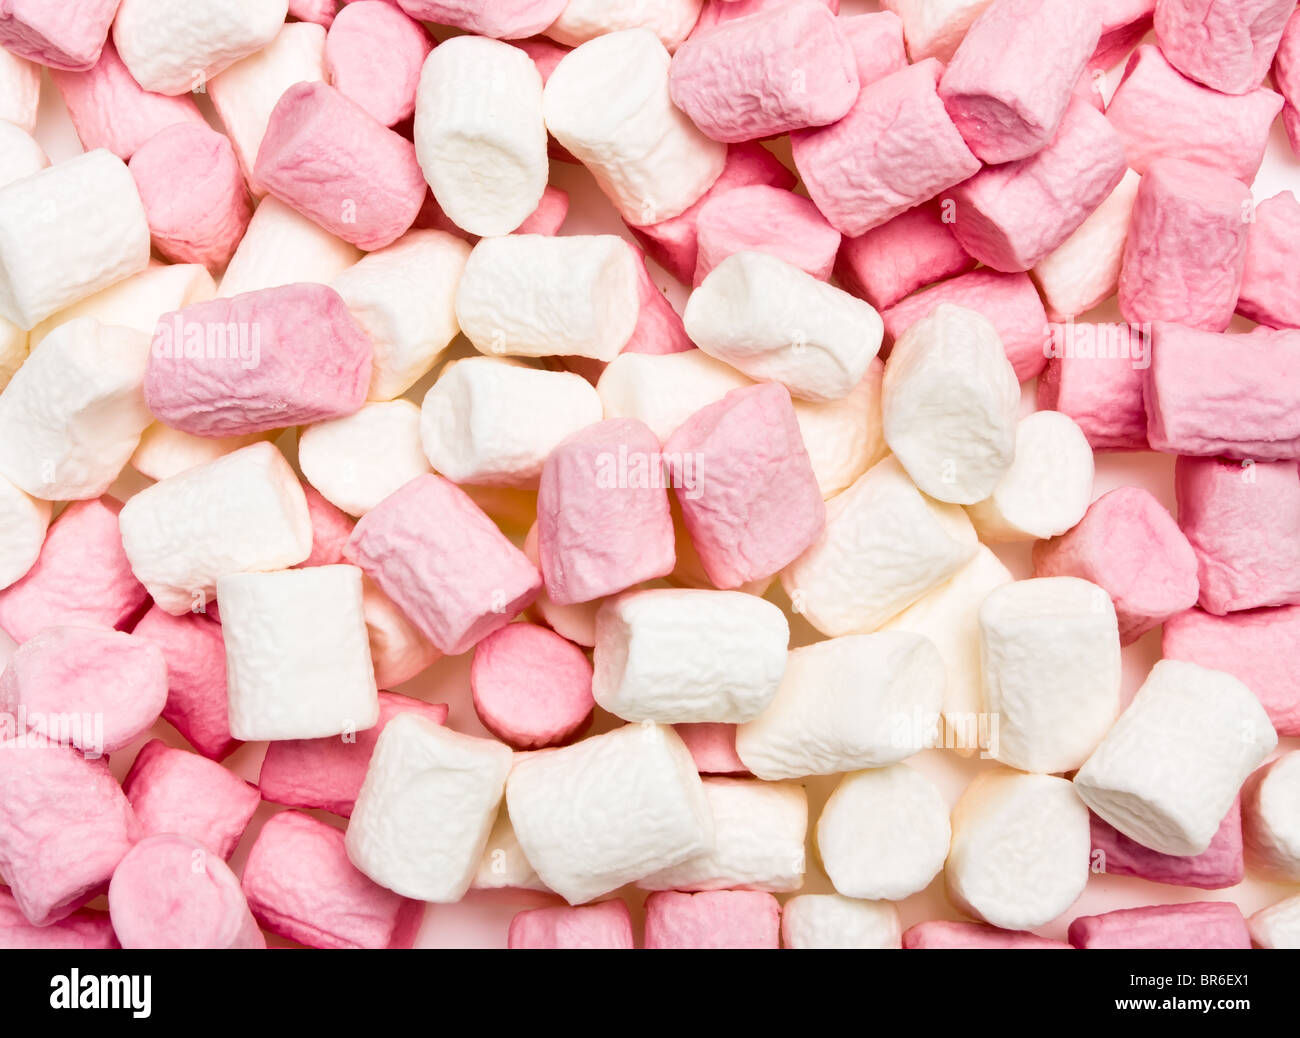 Hintergrund oder die Textur von rosa und weiße weiche kleine Marshmallows. Stockfoto